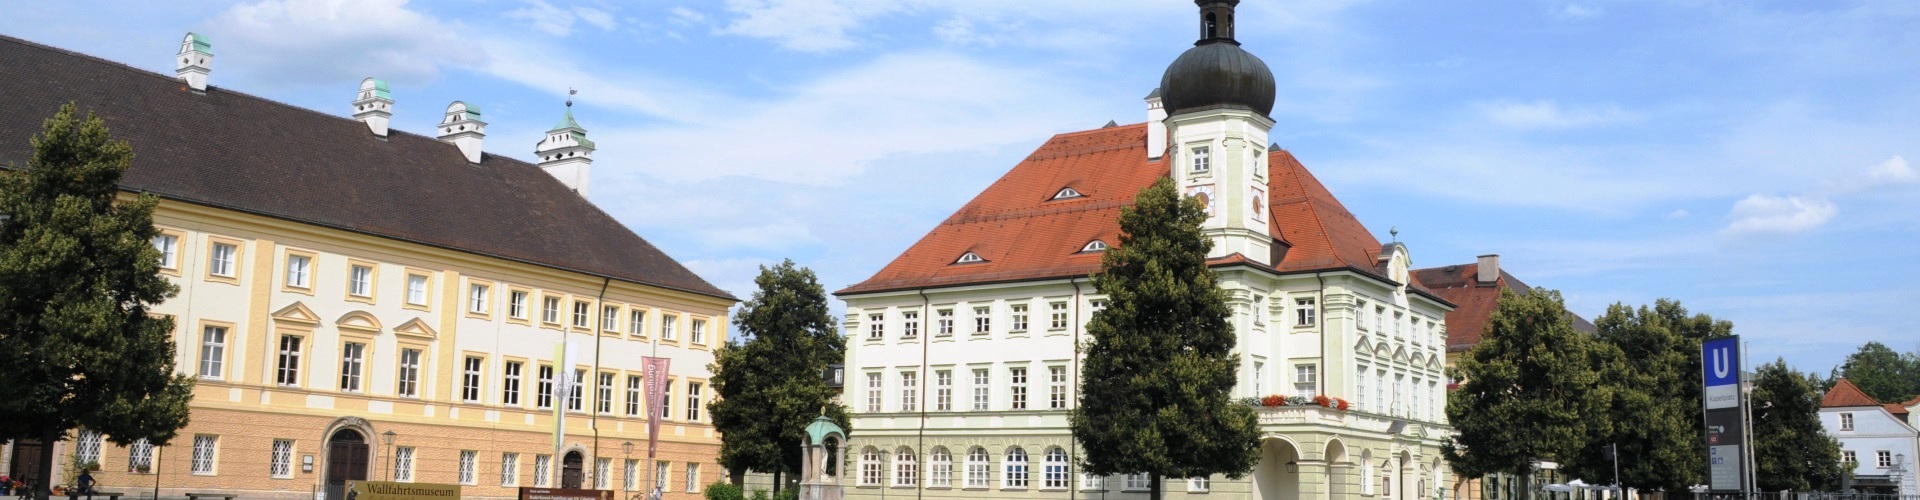 Blick auf das Rathaus Altötting mit der Schatzkammer nebenan.